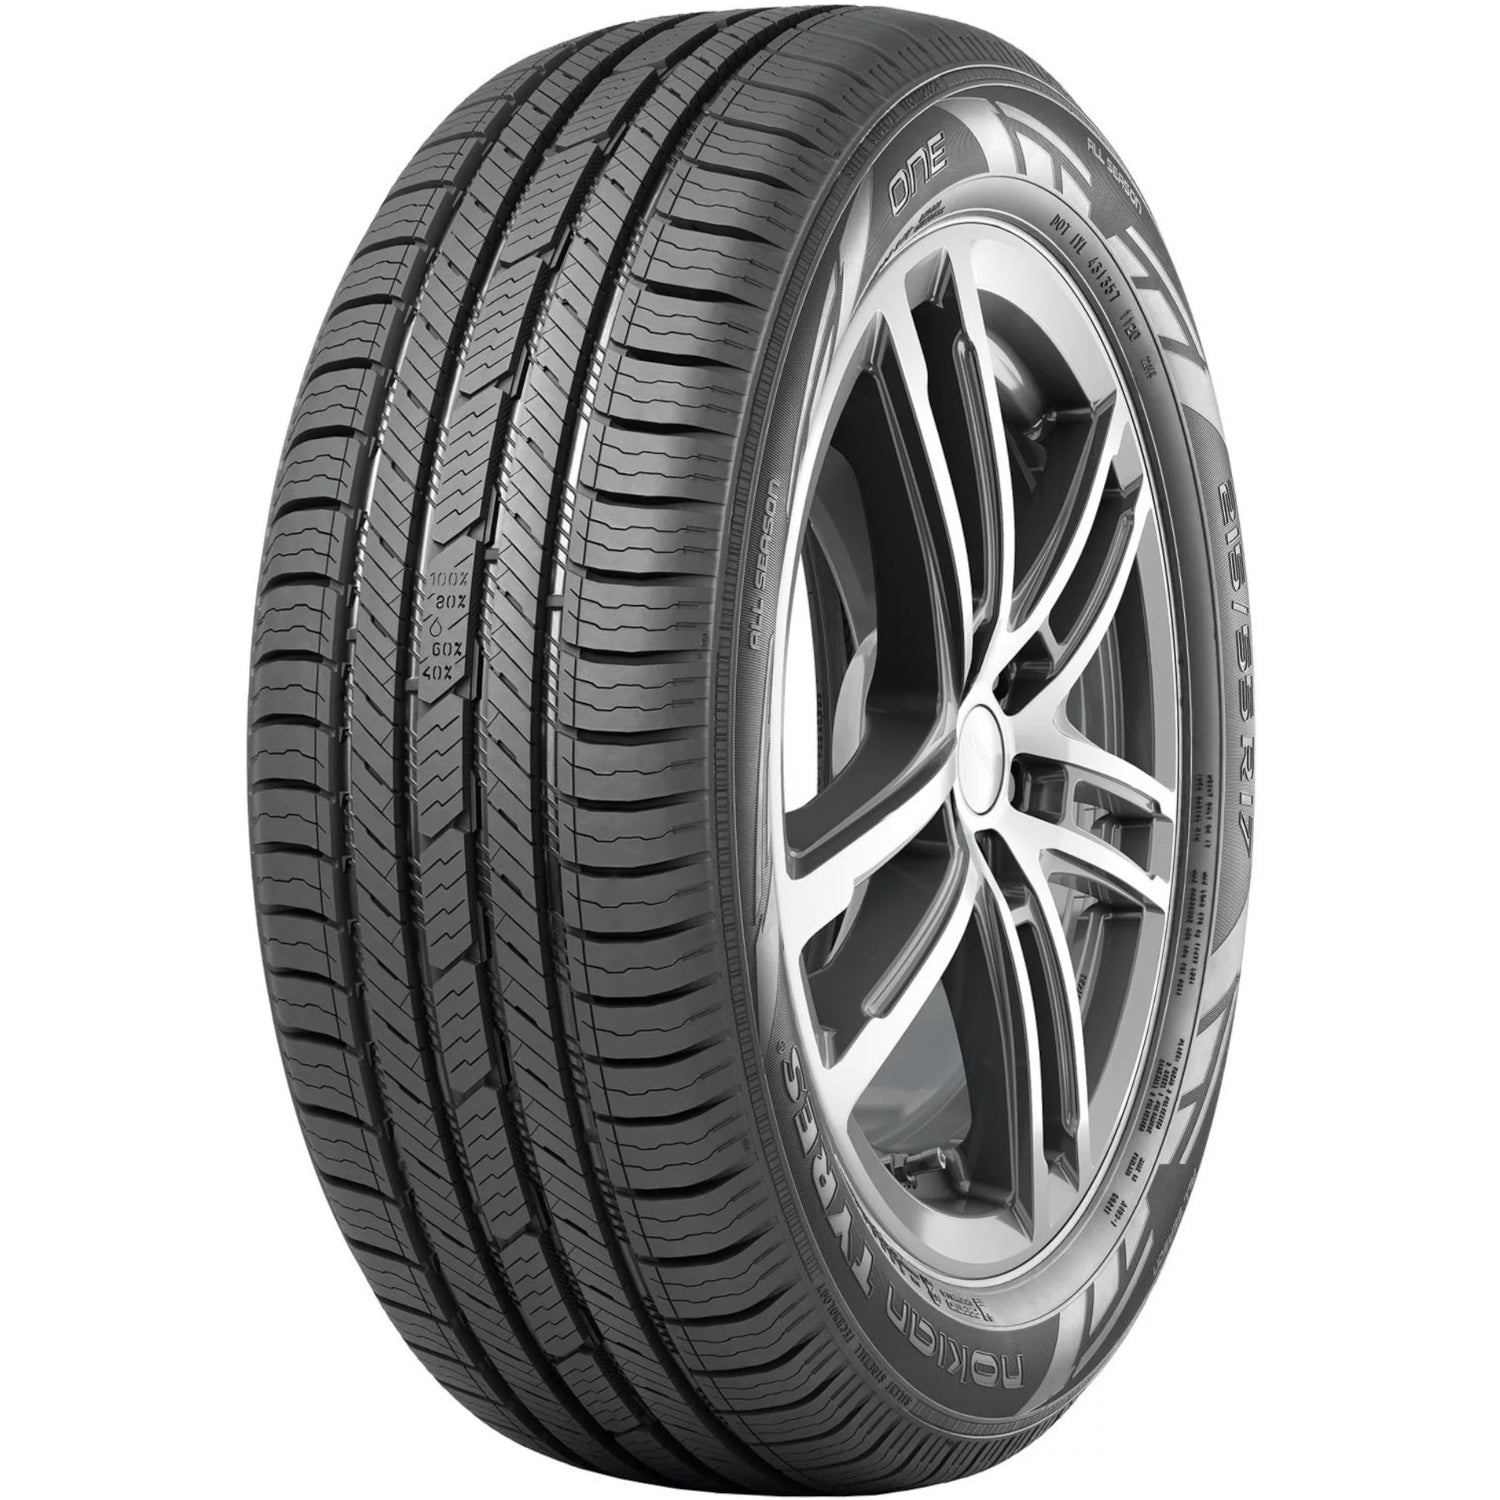 NOKIAN ONE 235/45R17XL (25.4X9.3R 17) Tires